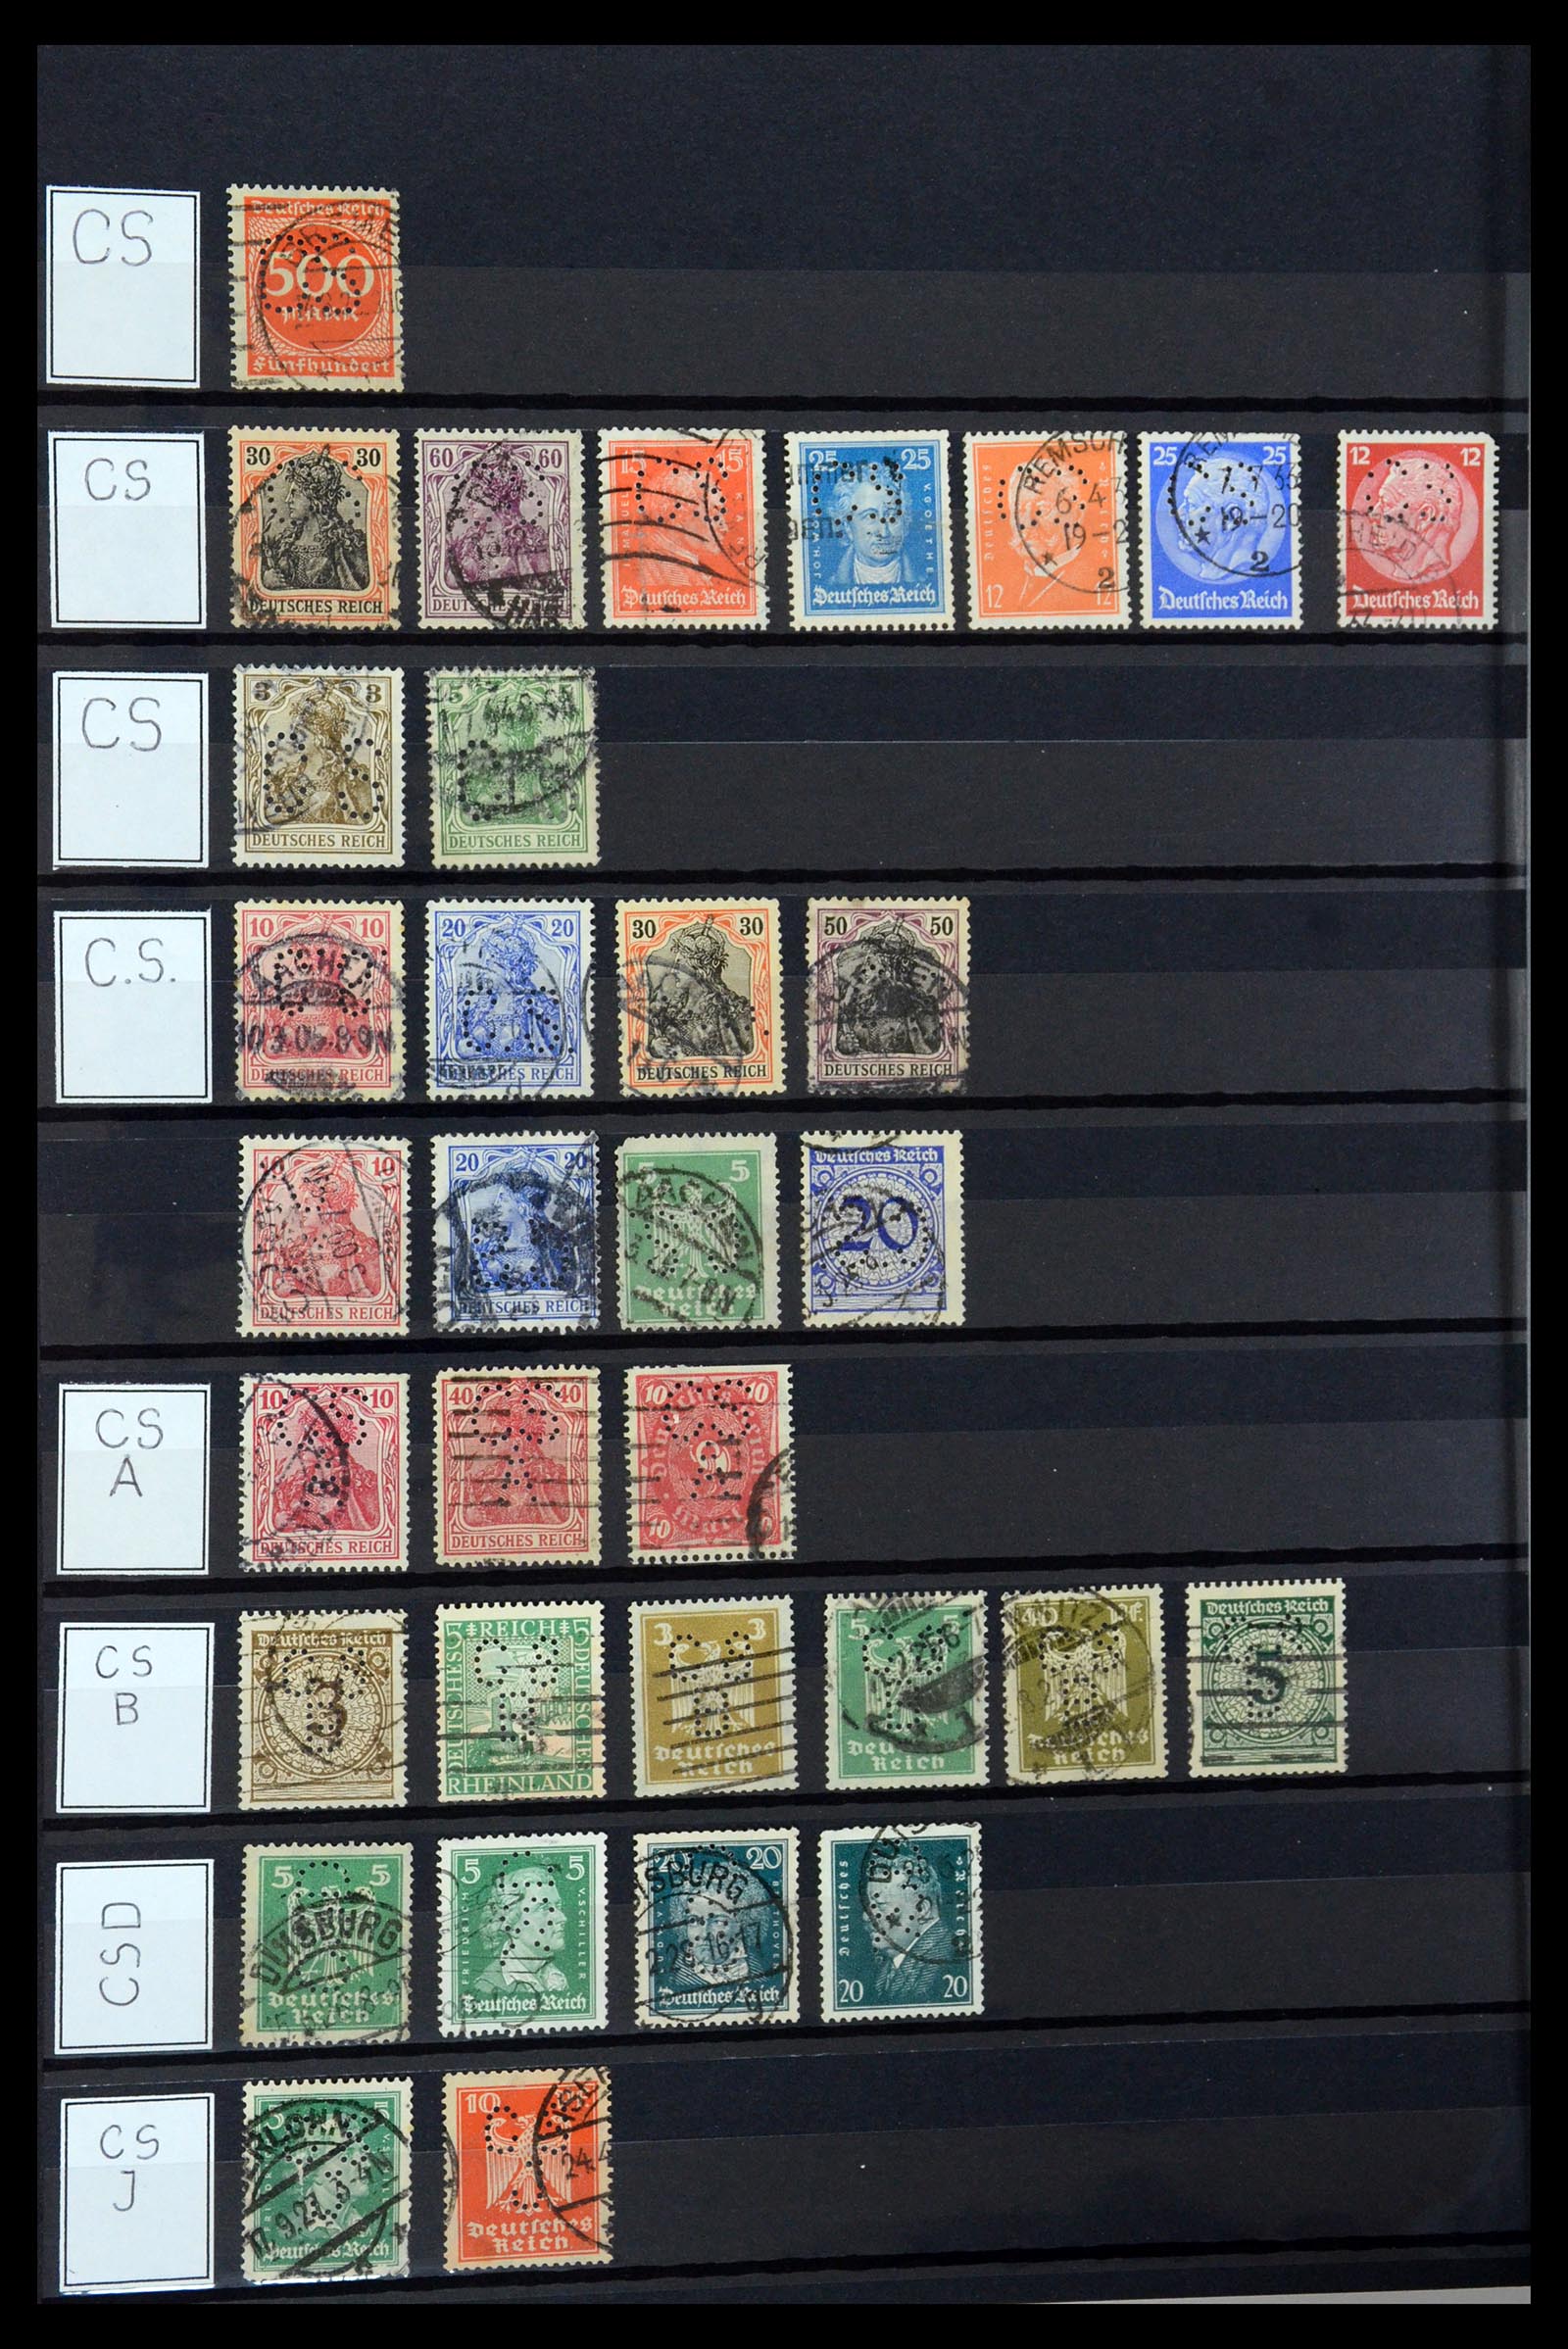 36405 082 - Stamp collection 36405 German Reich perfins 1880-1945.